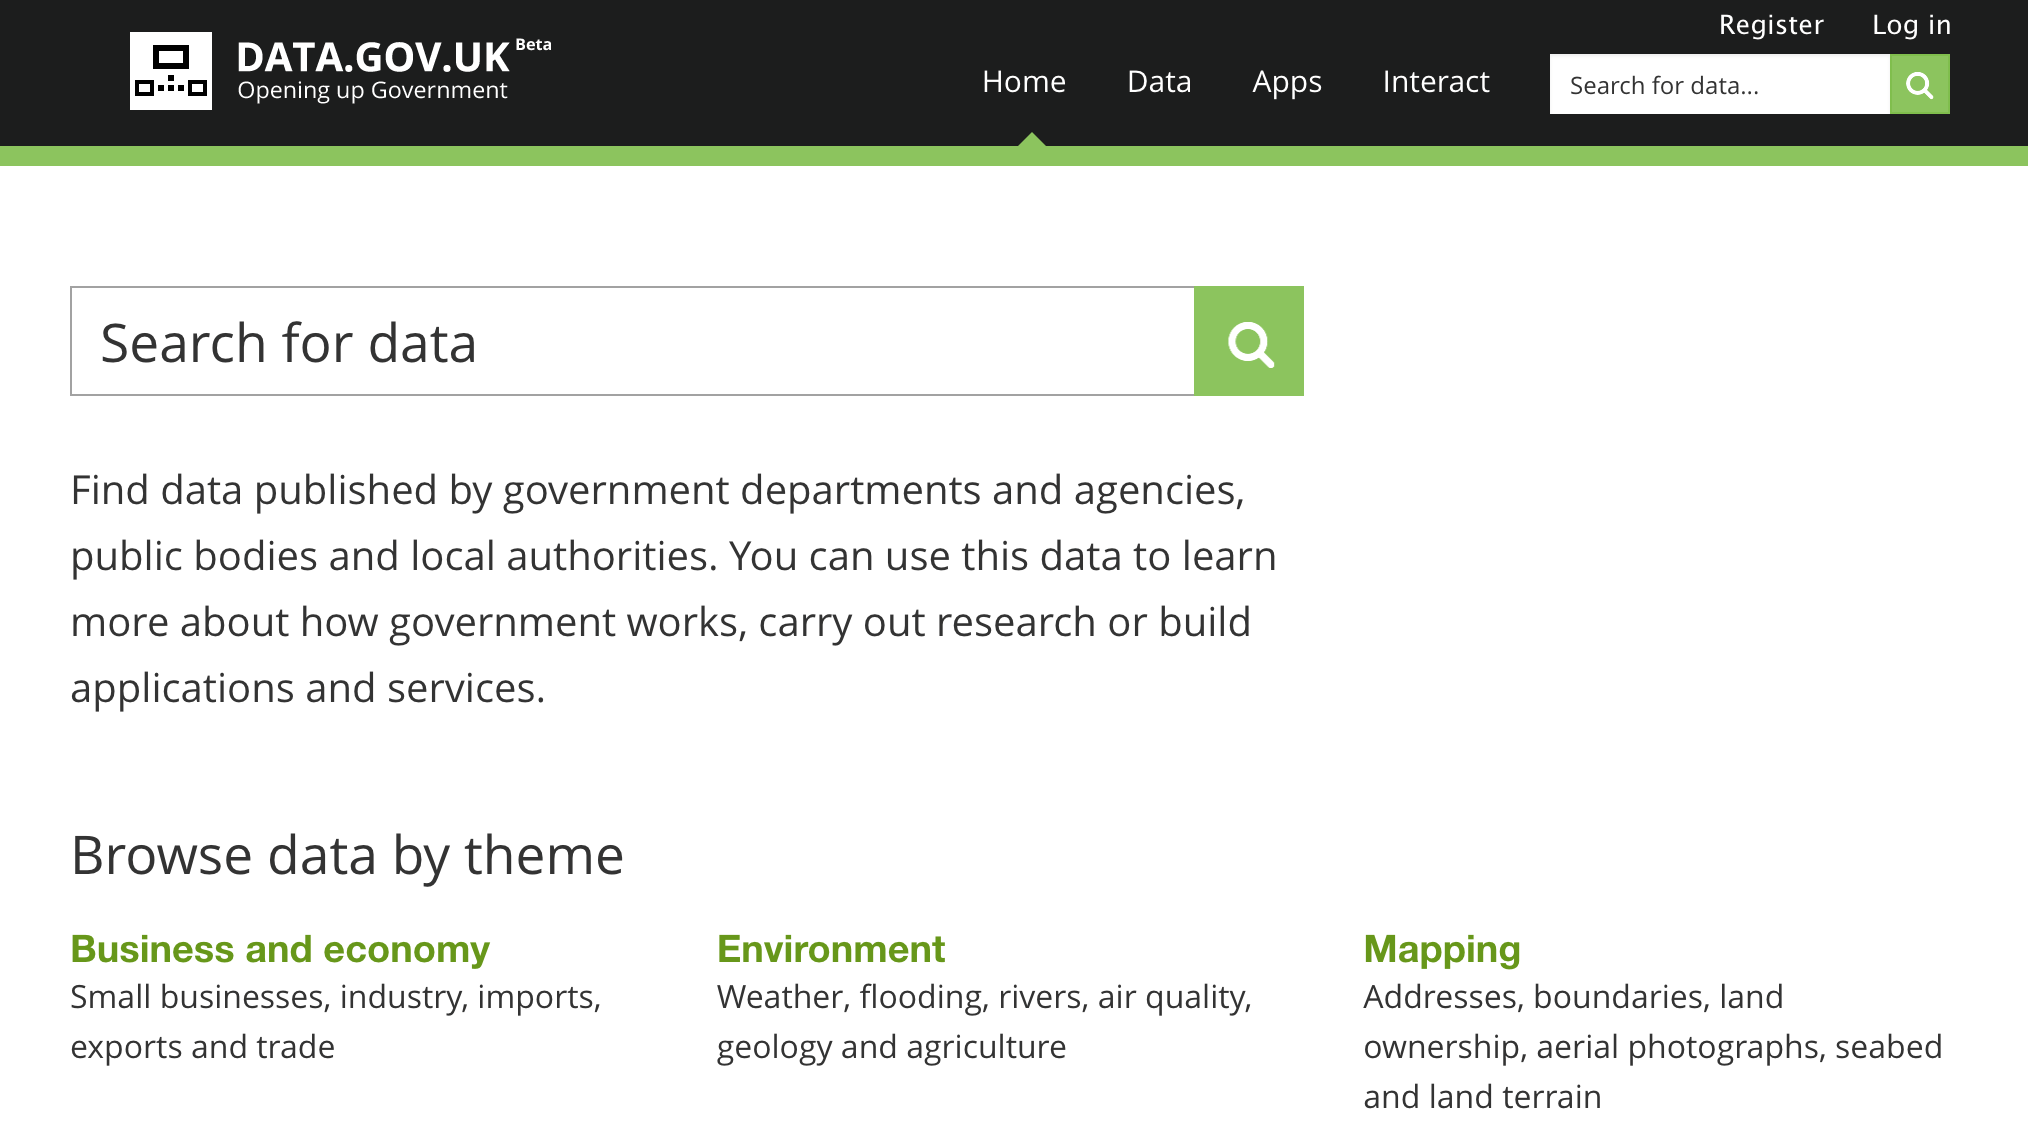 homepage del sitio data.gov.uk (UK)